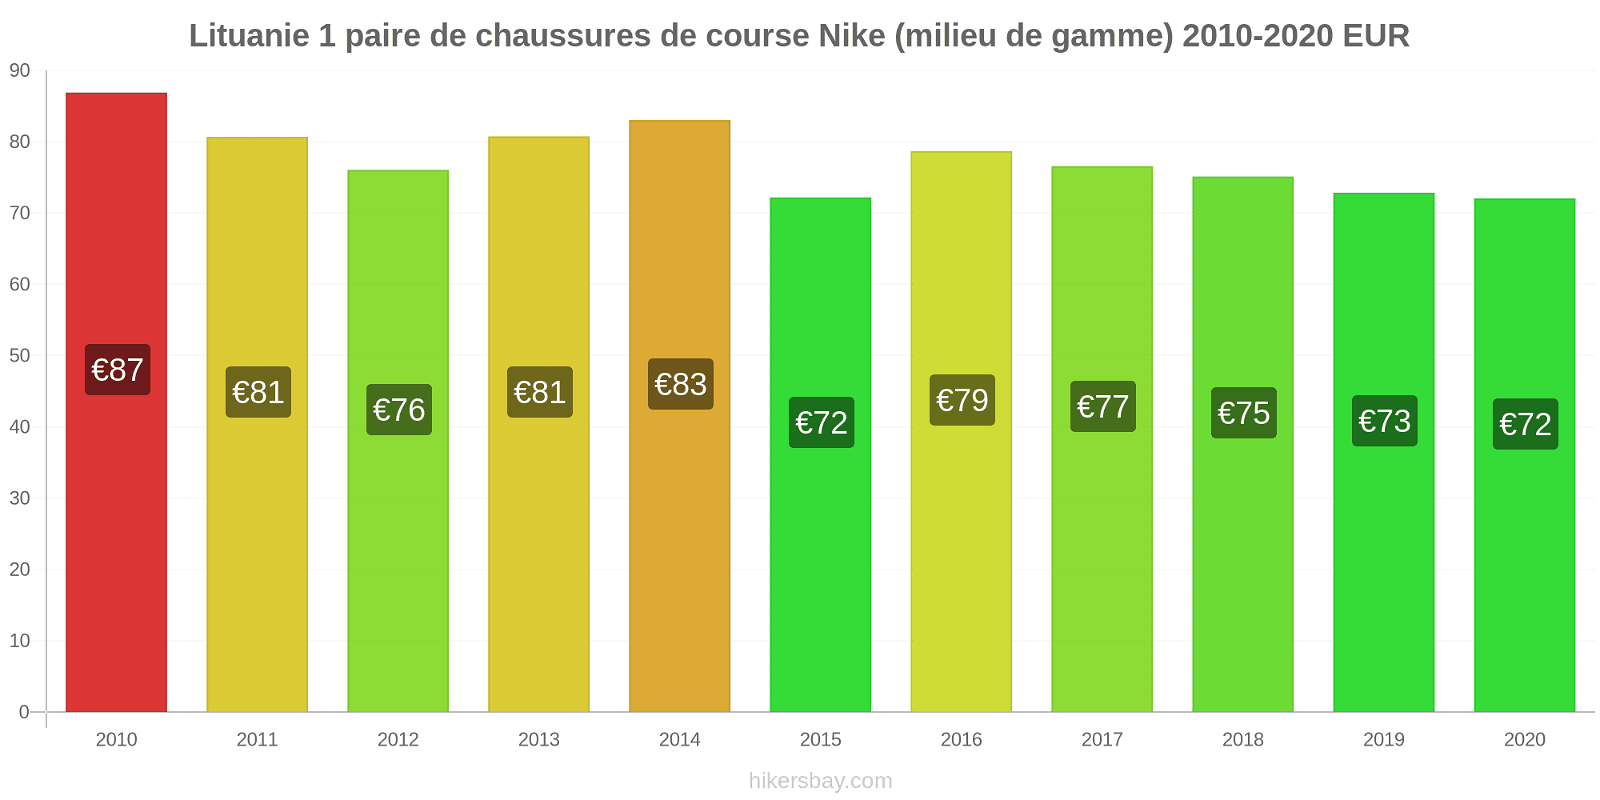 Lituanie changements de prix 1 paire de chaussures de course Nike (milieu de gamme) hikersbay.com